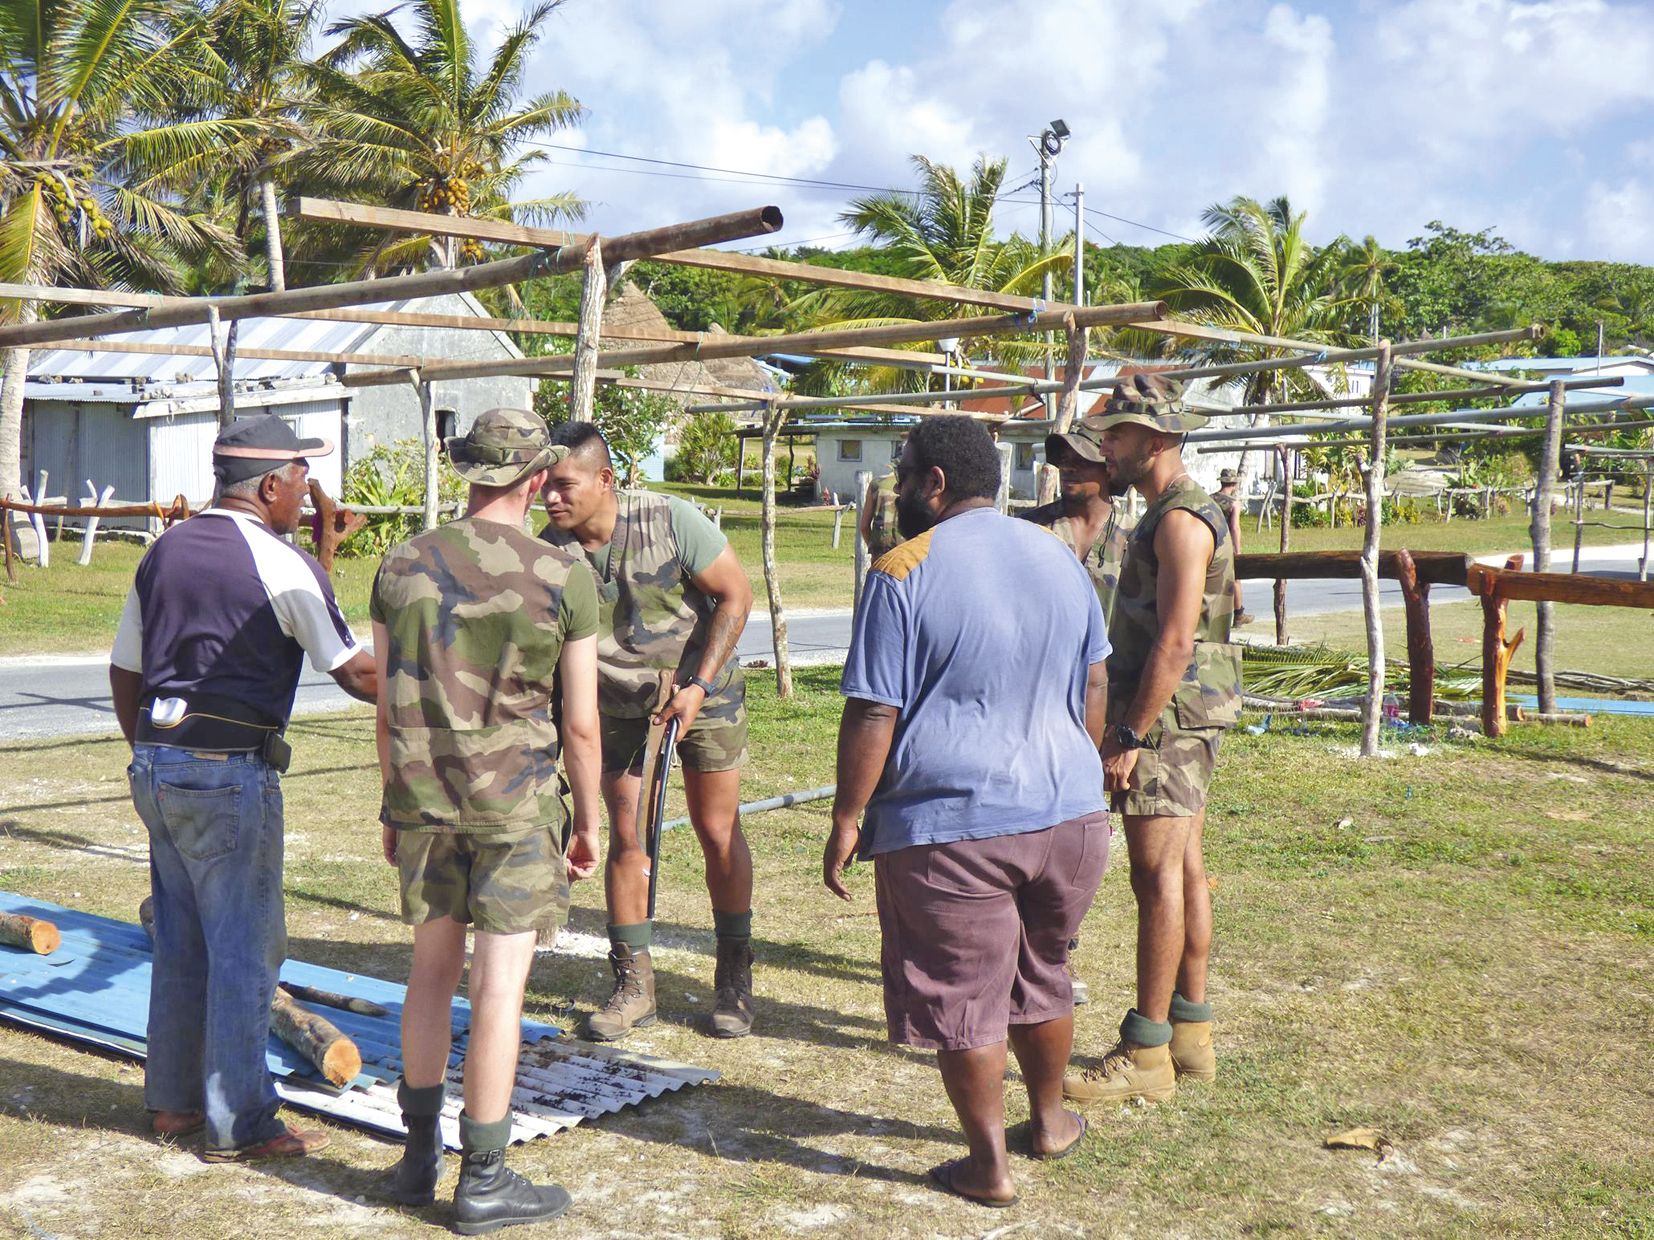 Vingt-six militaires du Rimap-NC (Régiment d’infanterie de marine du Pacifique Nouvelle-Calédonie) participent à l’aménagement du site.